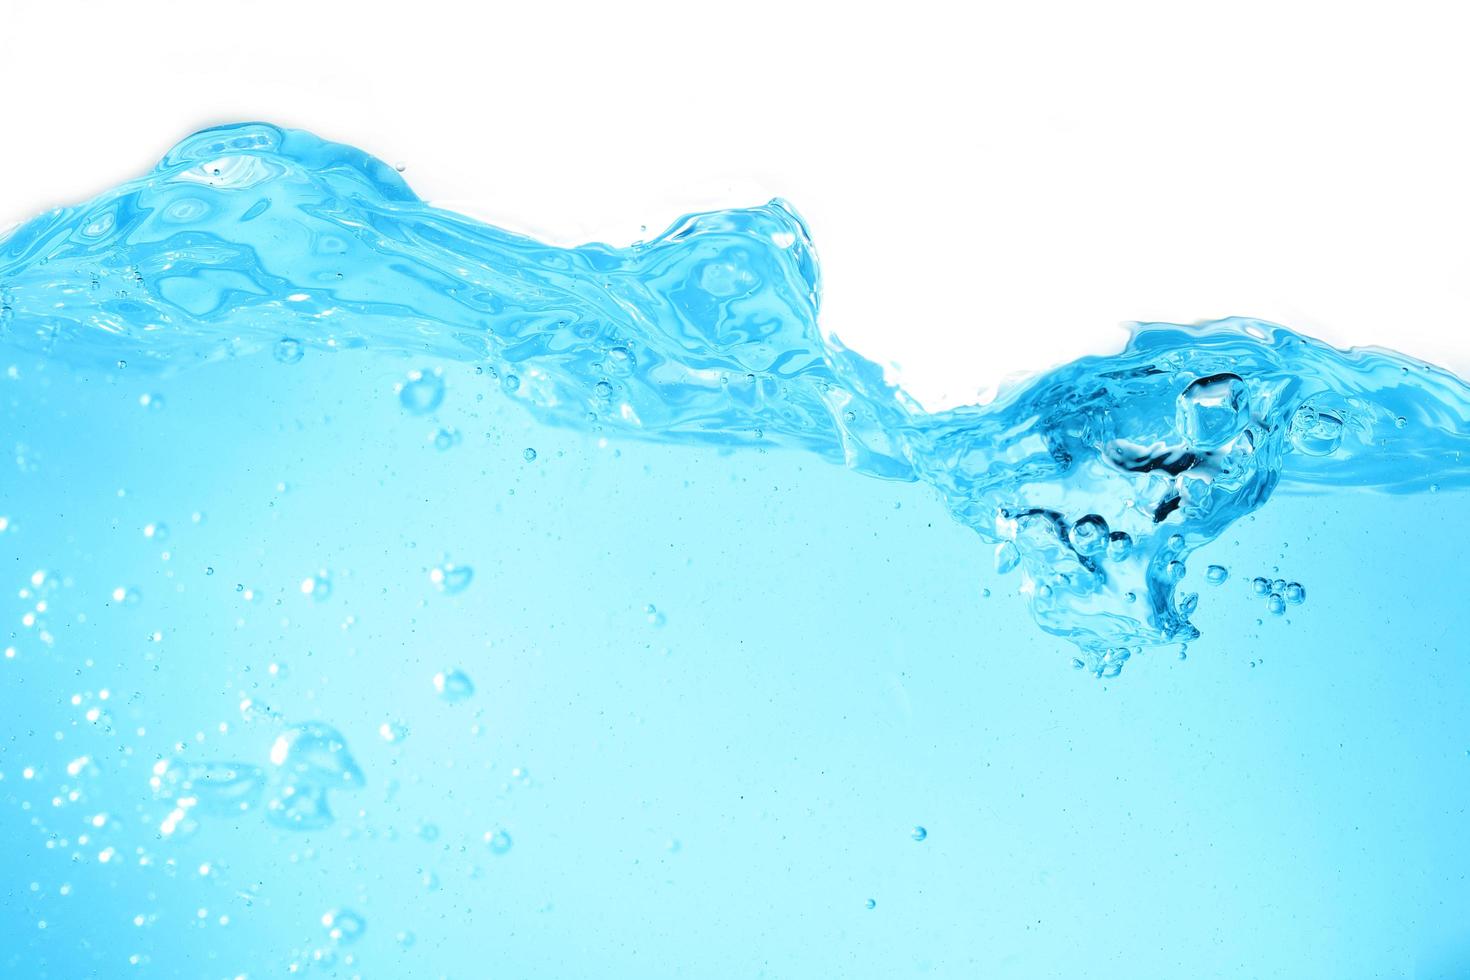 acqua superficiale blu e bolla d'aria isolata su sfondo bianco foto